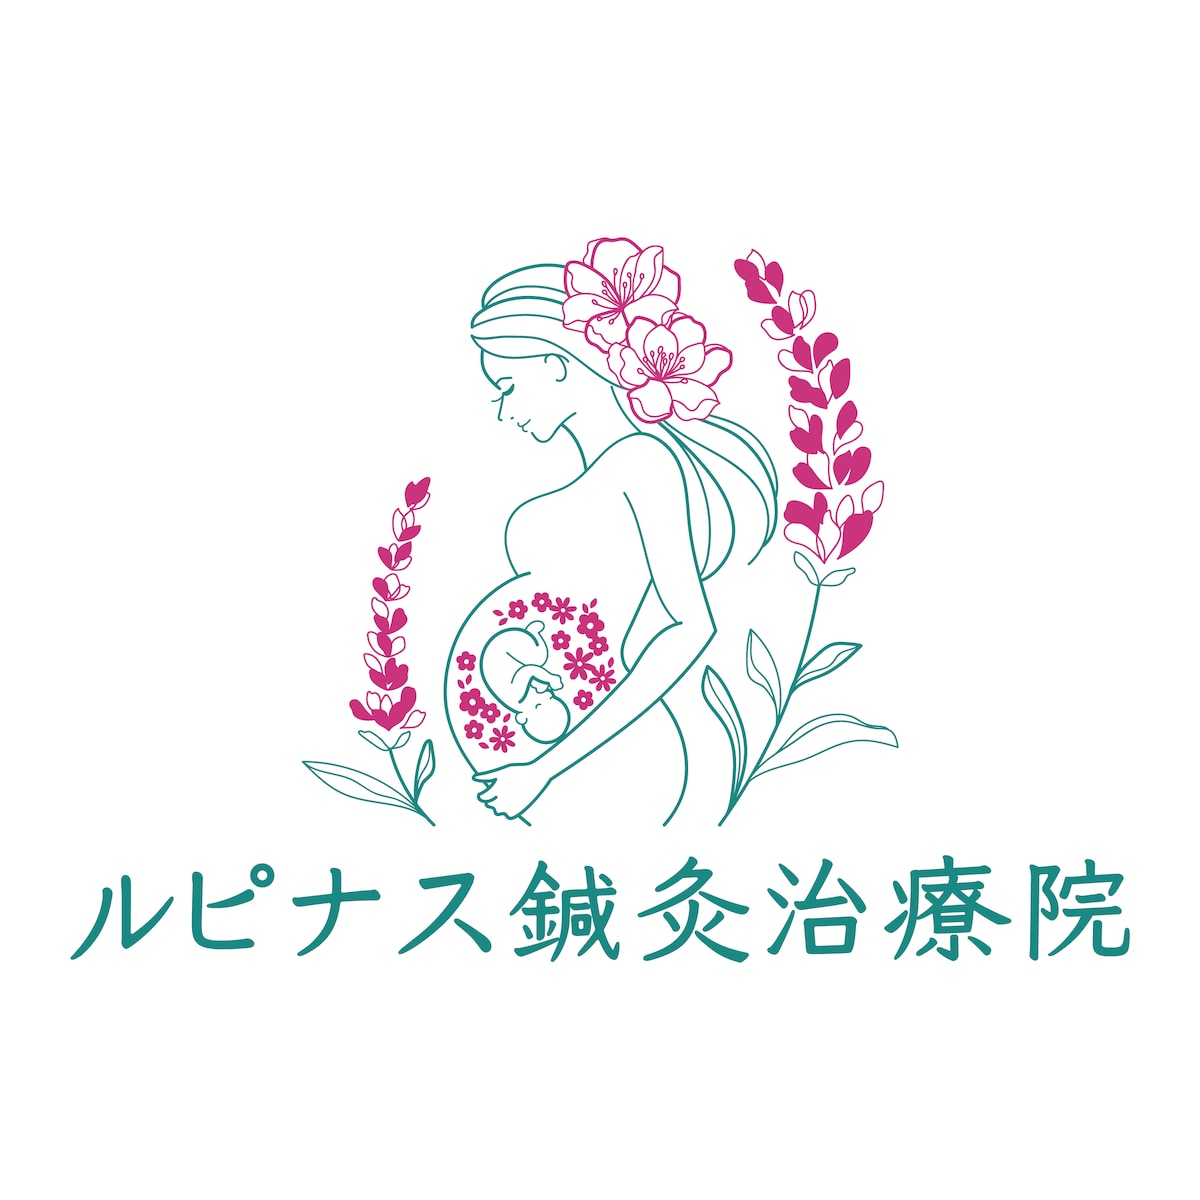 【125】女性専門鍼灸院様のロゴデザイン